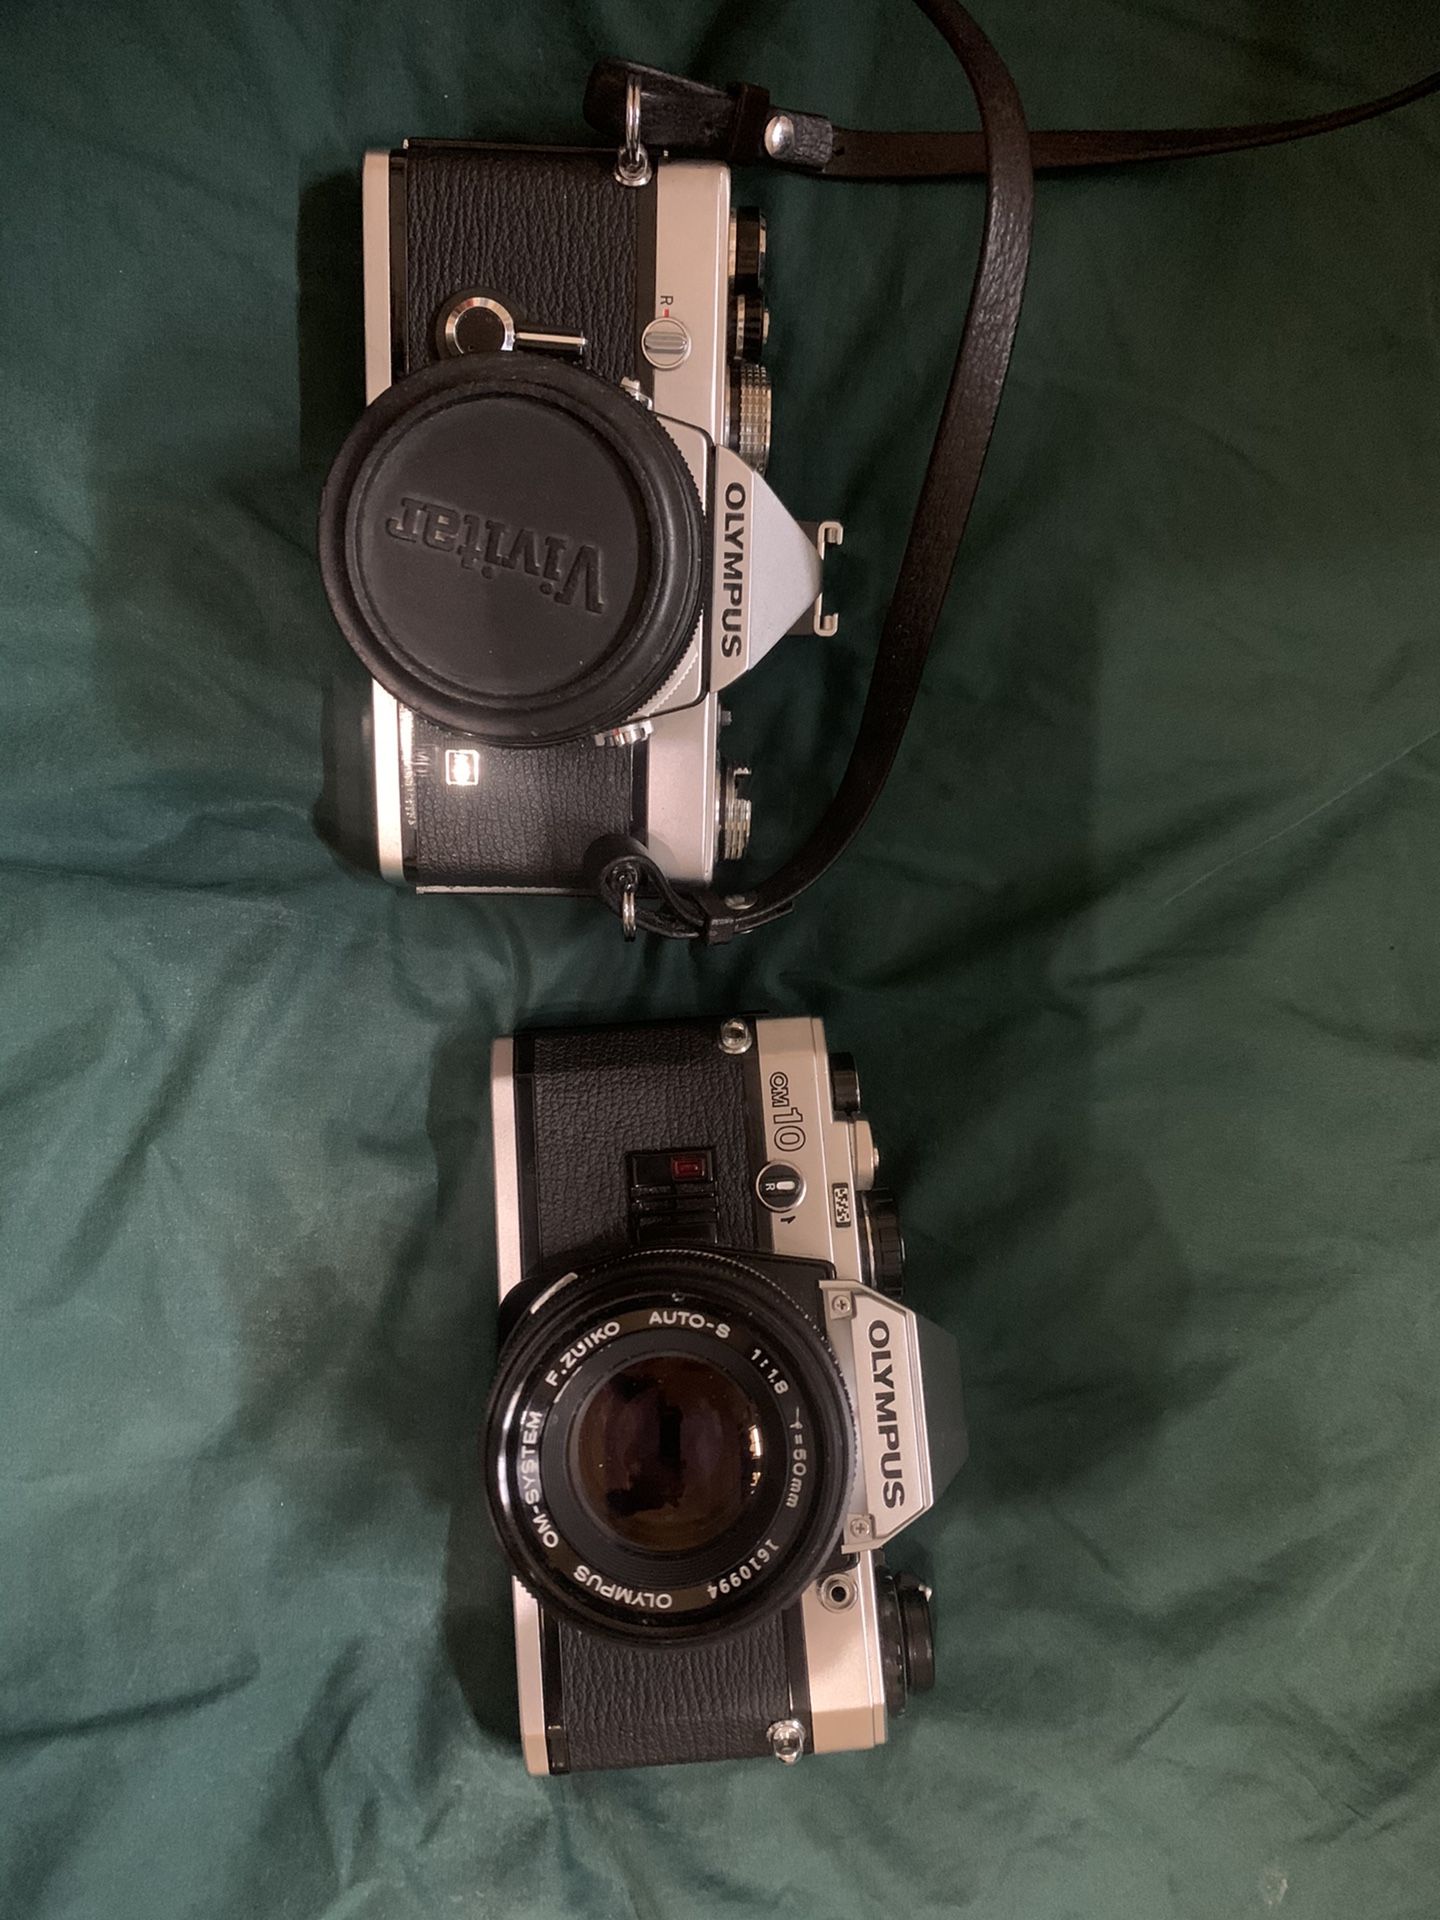 Olympus film cameras